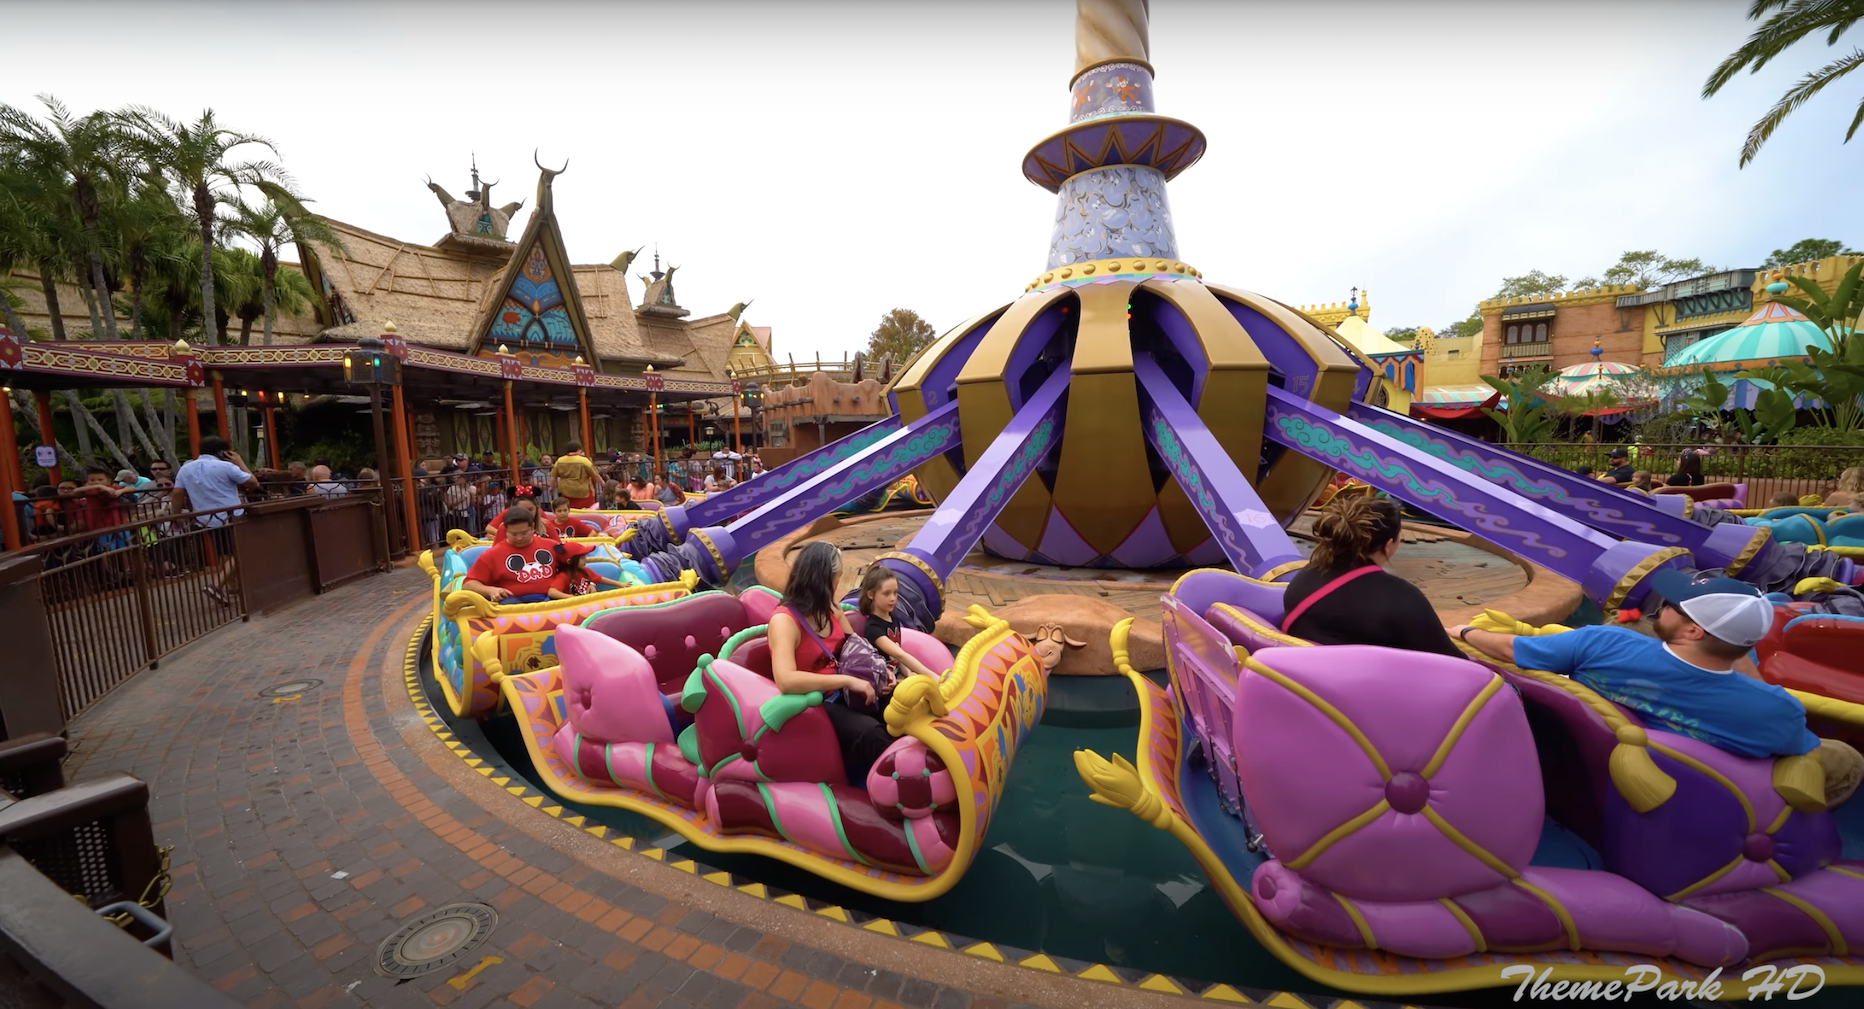 The Magic Carpets of Aladdin at Magic Kingdom